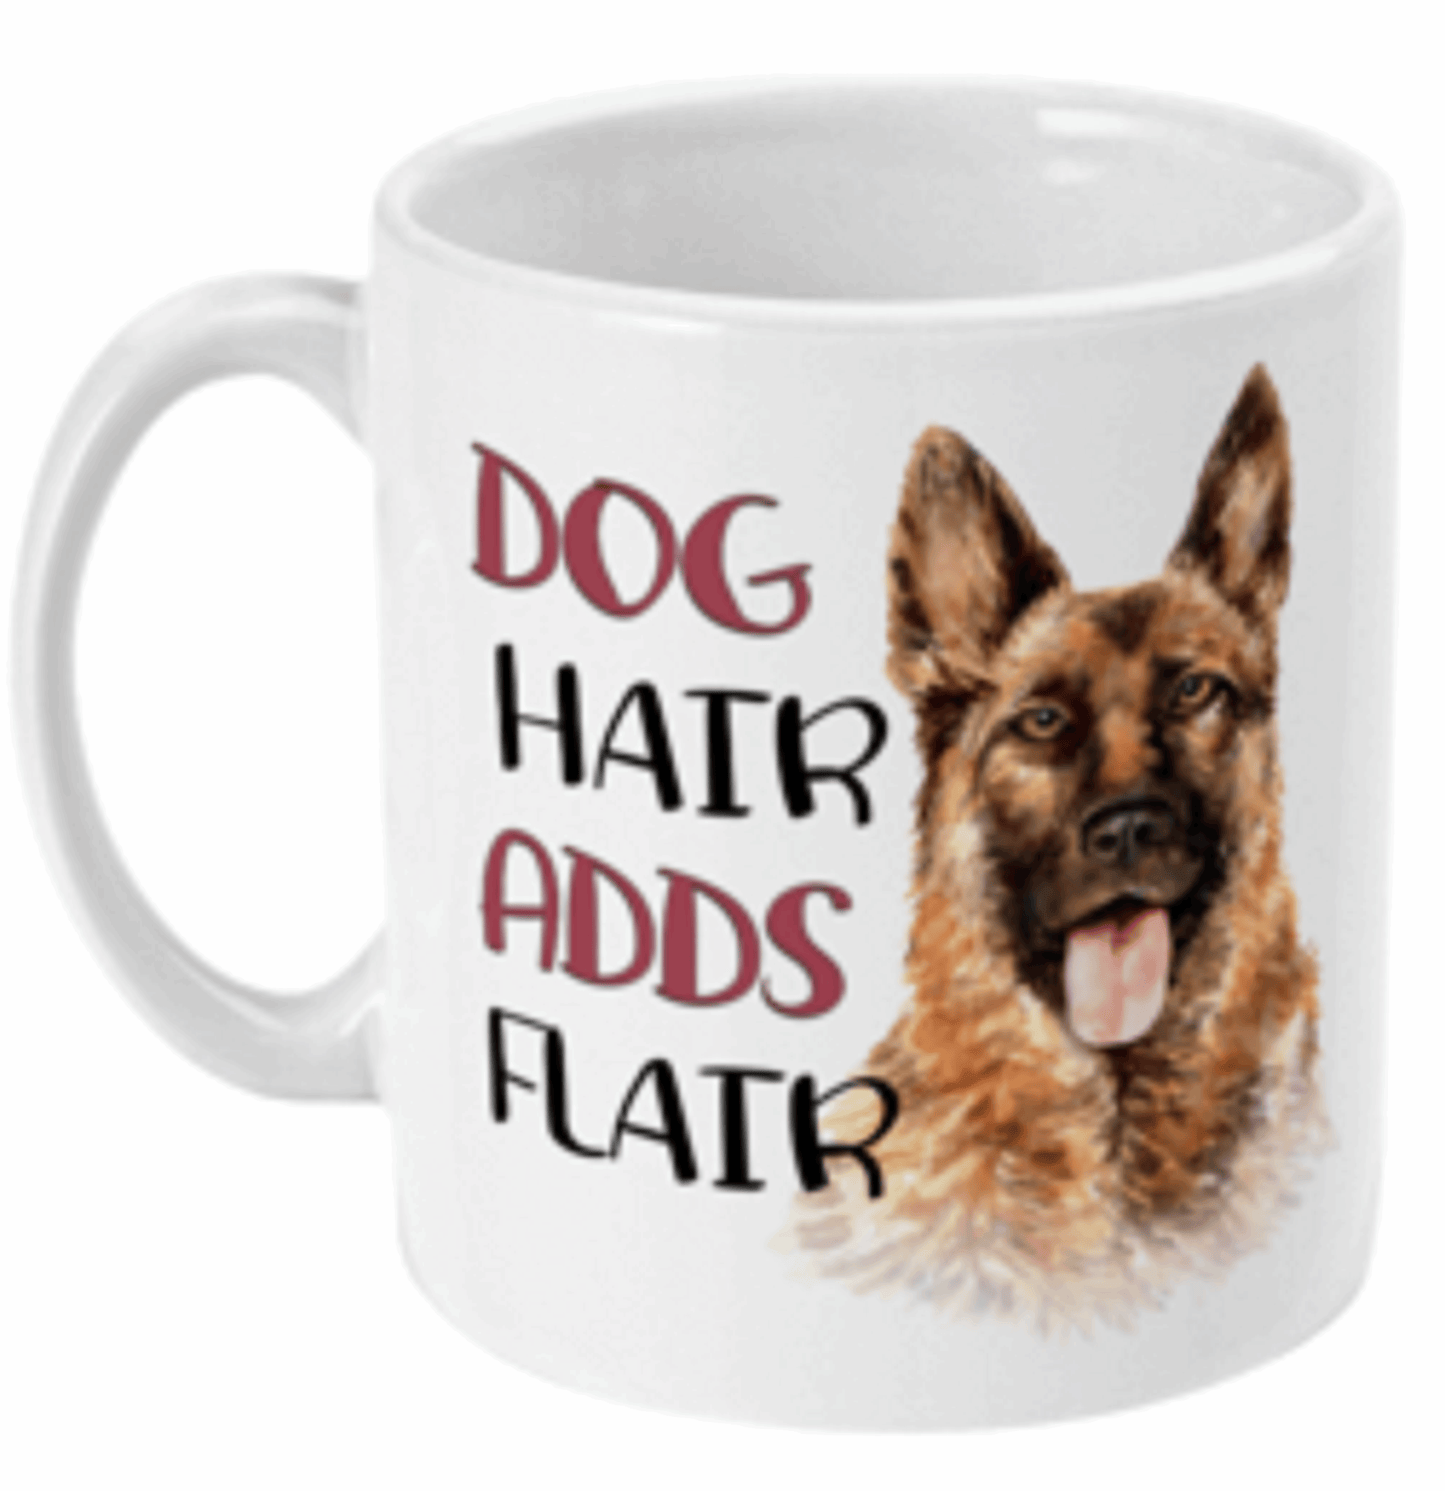  Dog Hair Adds Flair German Shepherd Mug by Free Spirit Accessories sold by Free Spirit Accessories